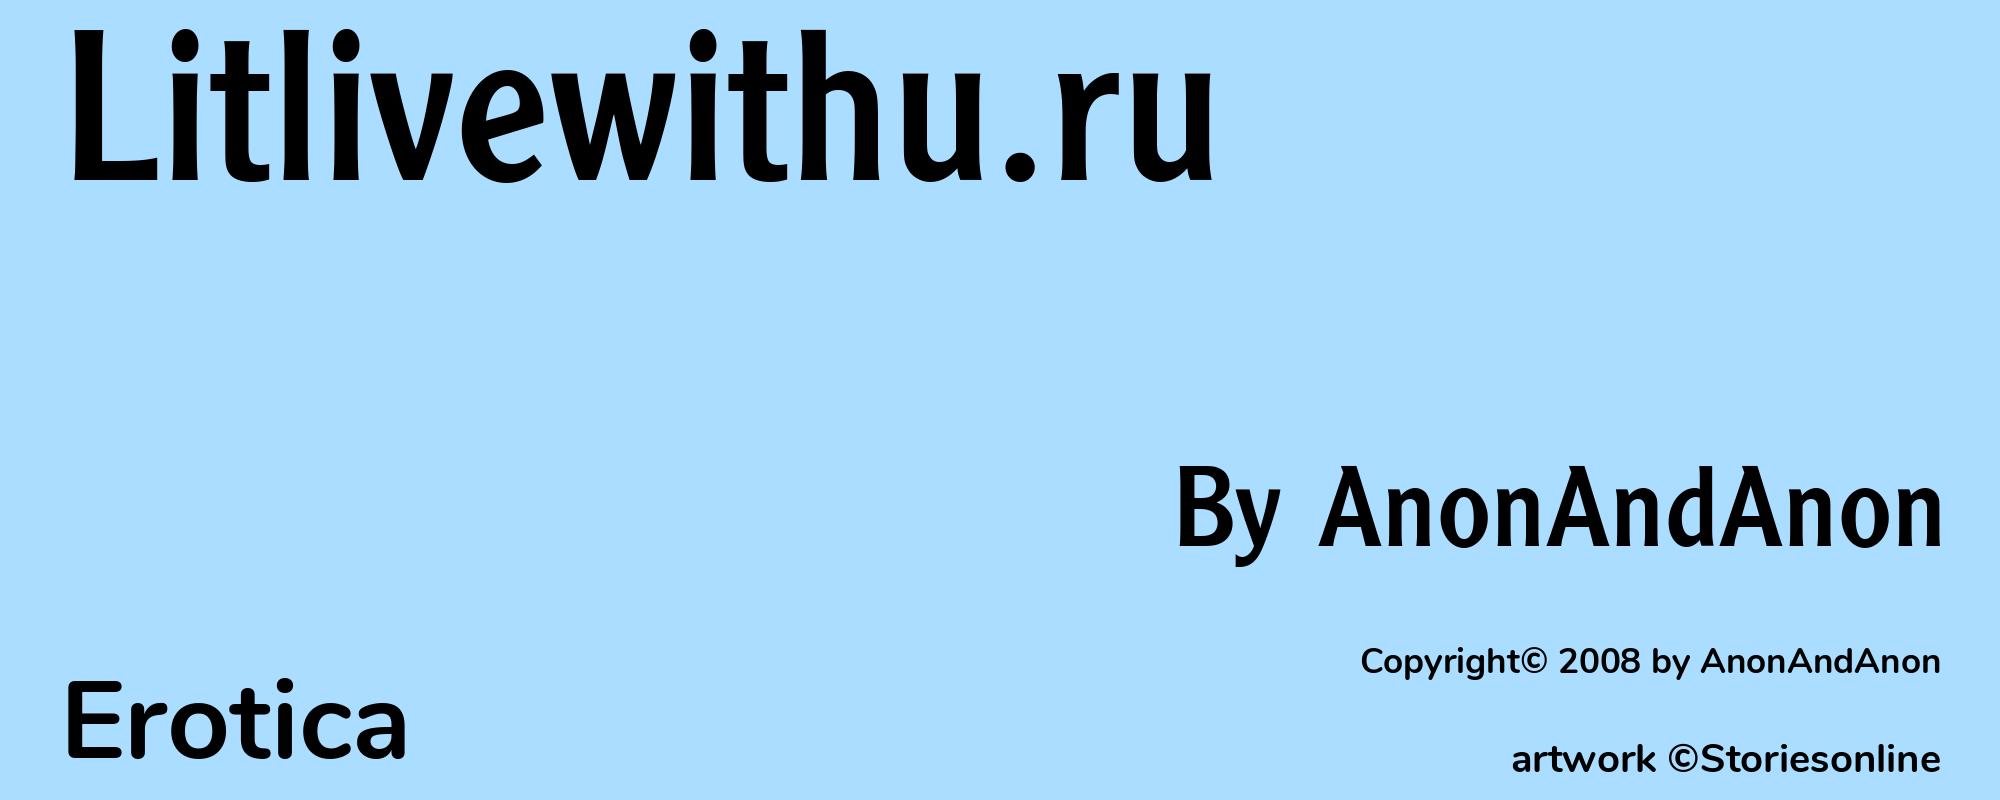 Litlivewithu.ru - Cover